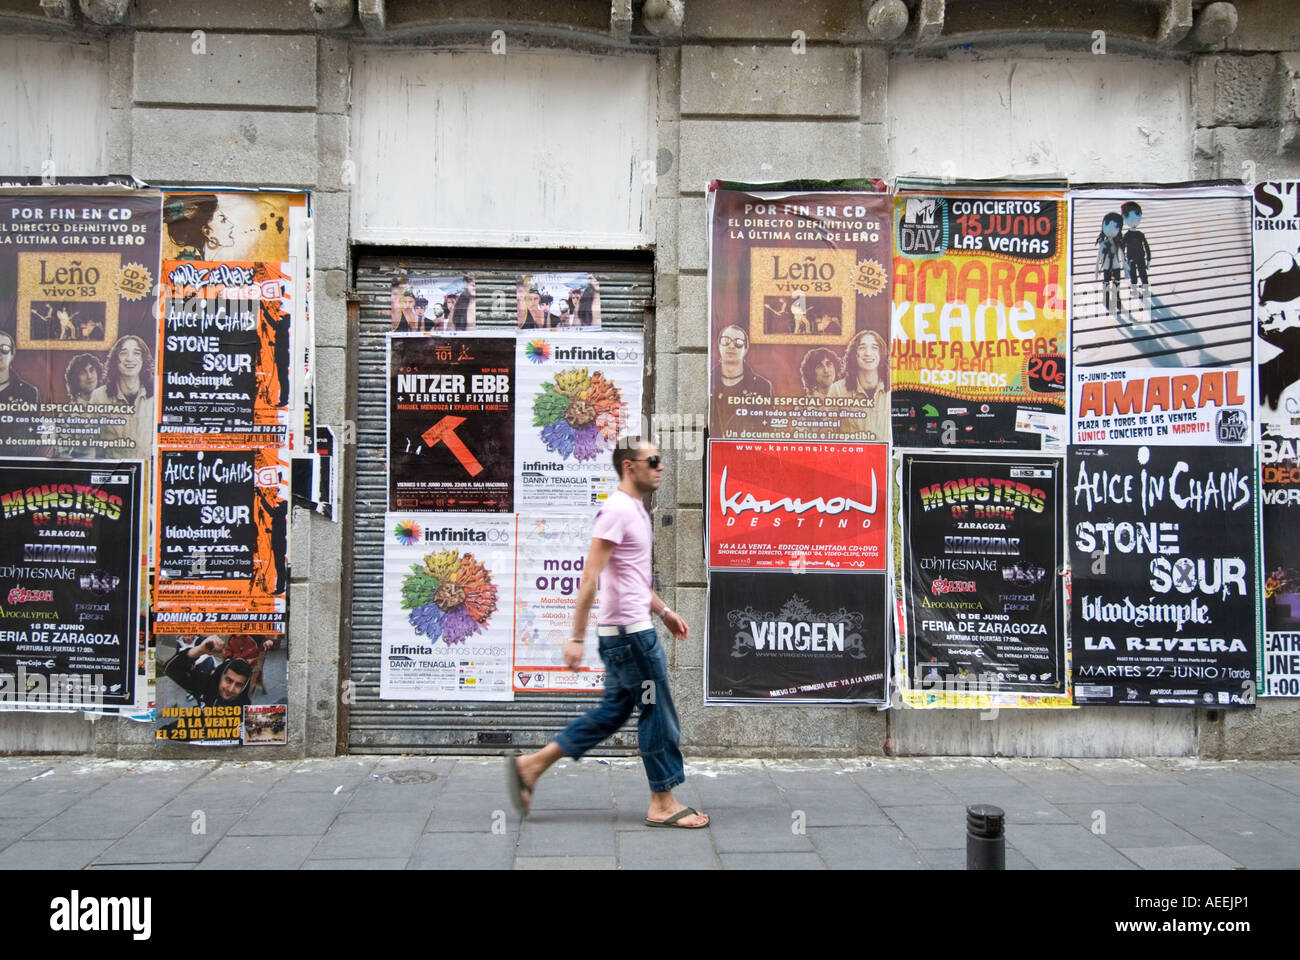 Homme marchant passé fly publicité affiches rock de zone Chueca, Madrid Espagne Banque D'Images